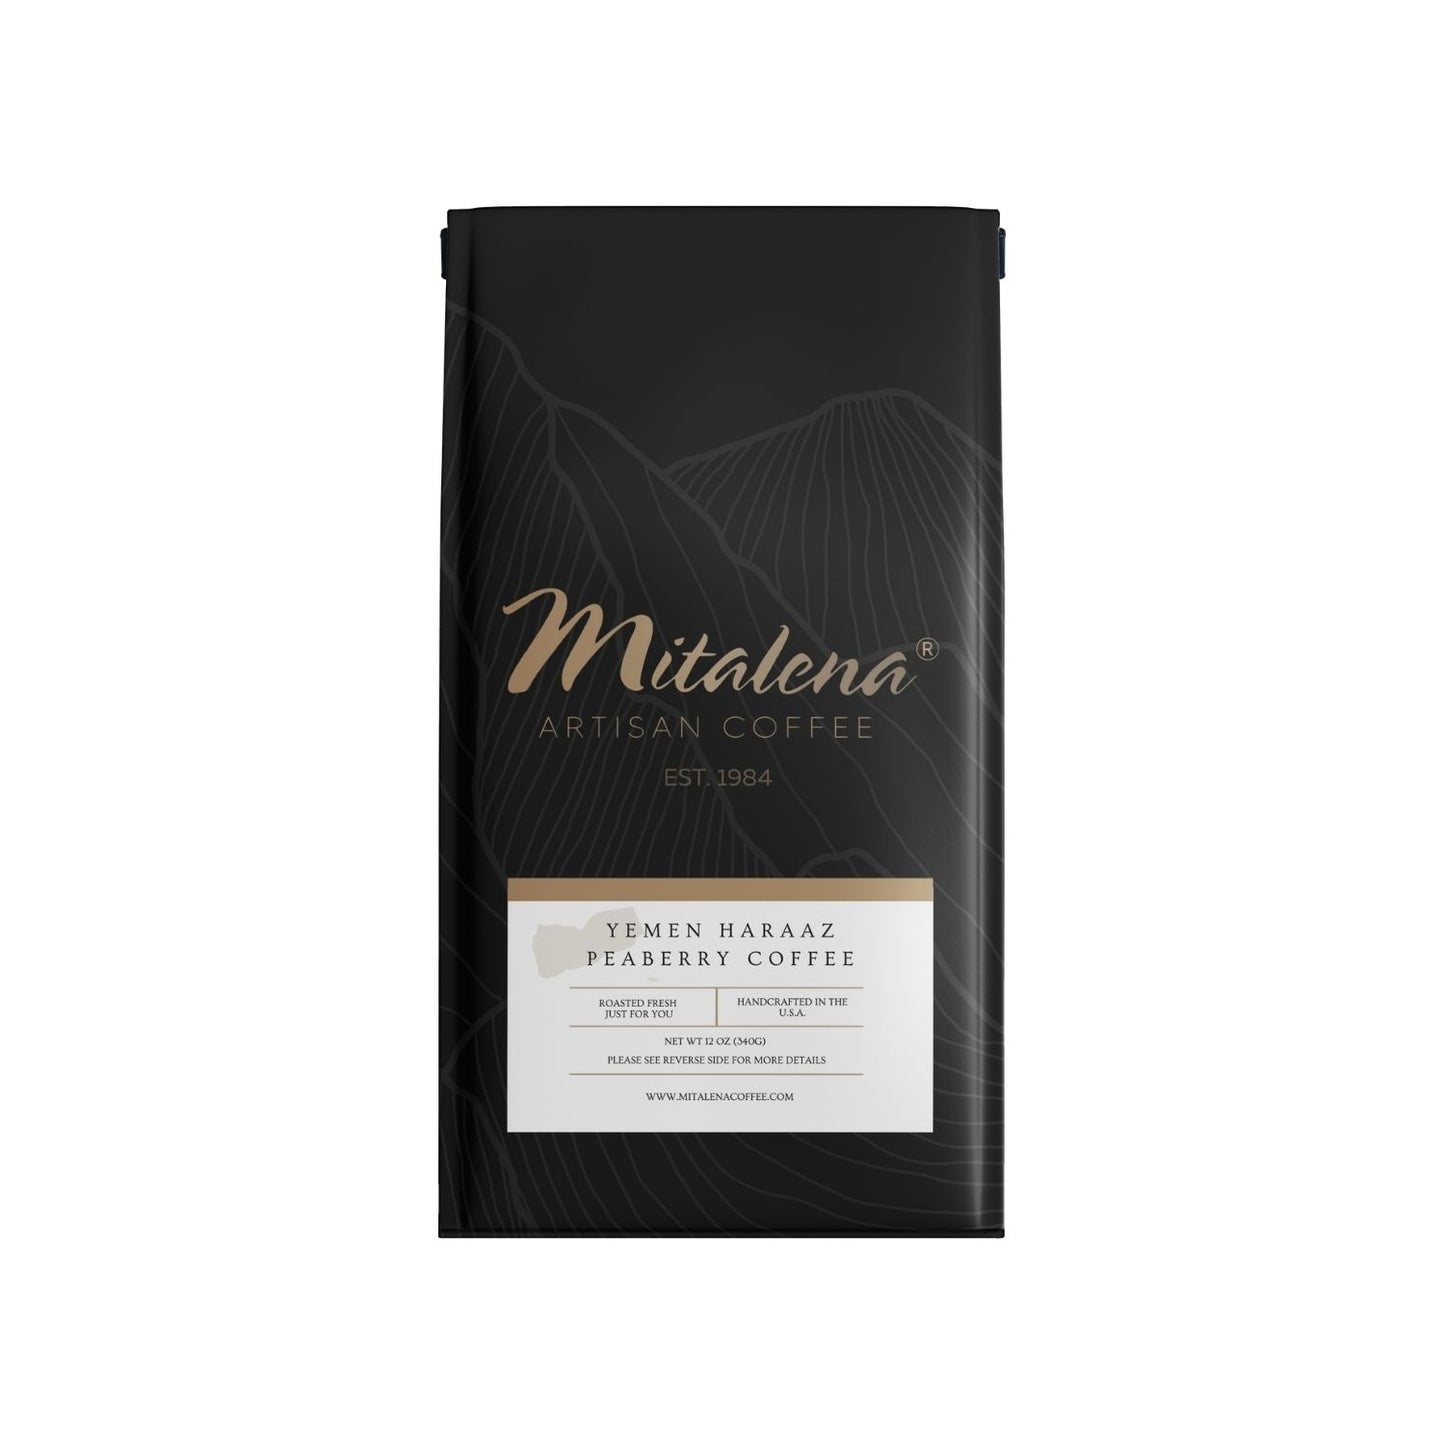 Mitalena Coffee - Yemen Haraaz Peaberry Coffee, 12 oz.